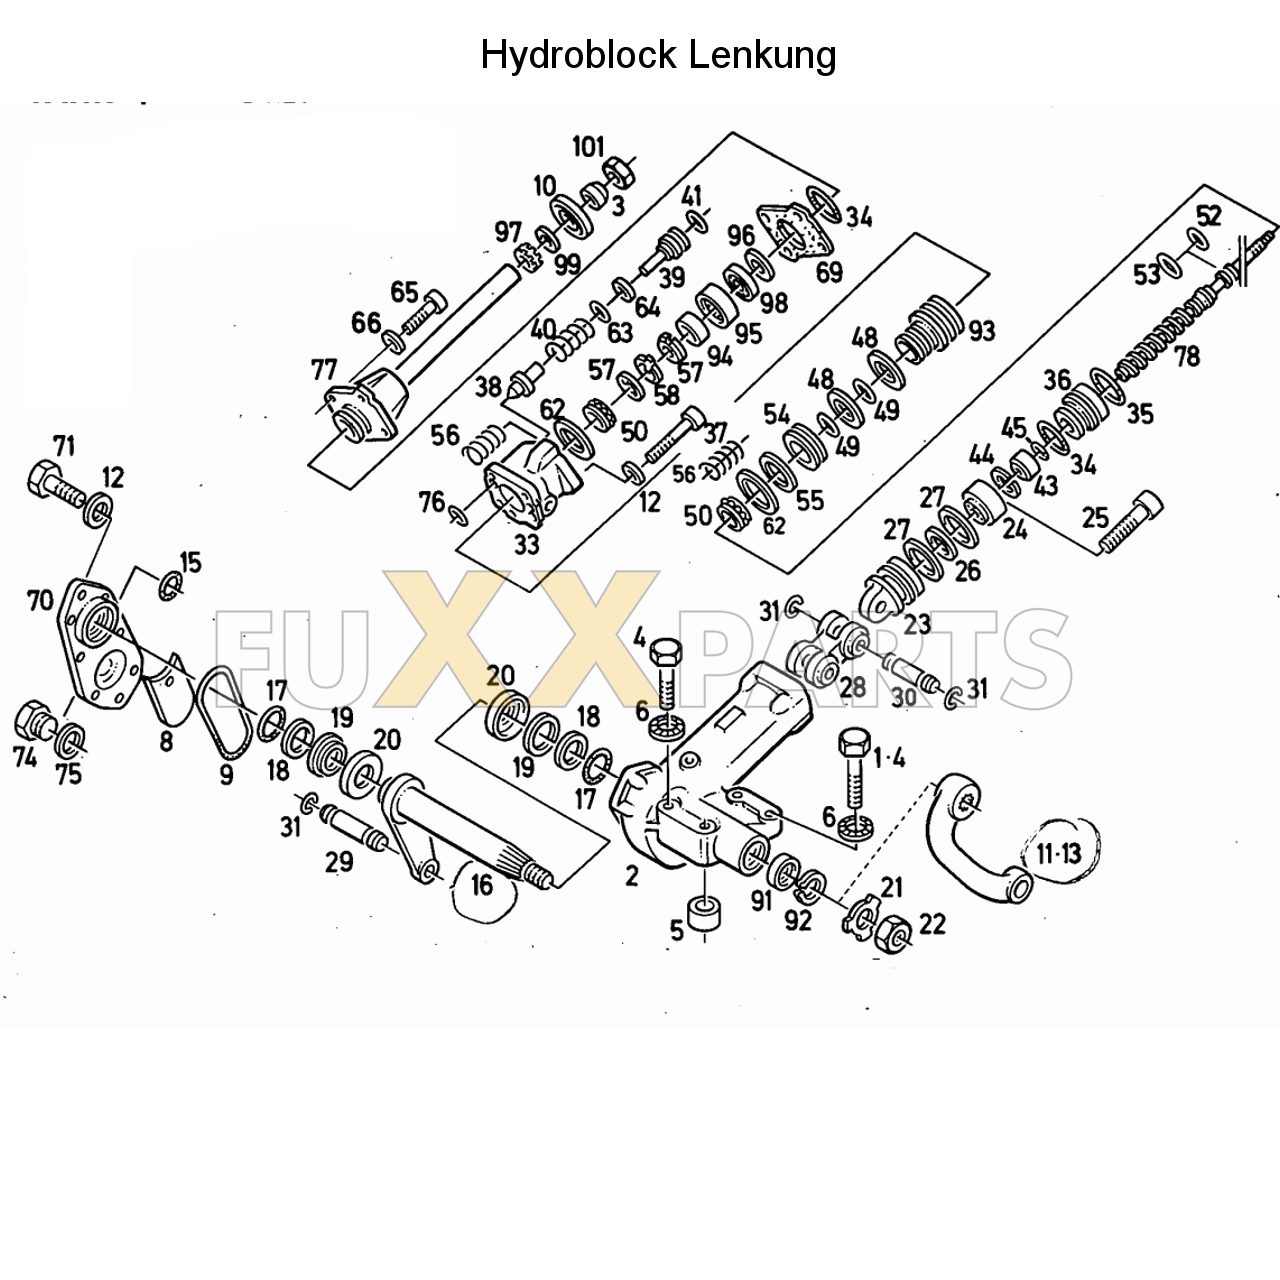 D 7206 Hydraulische Lenkung (Hydroblock